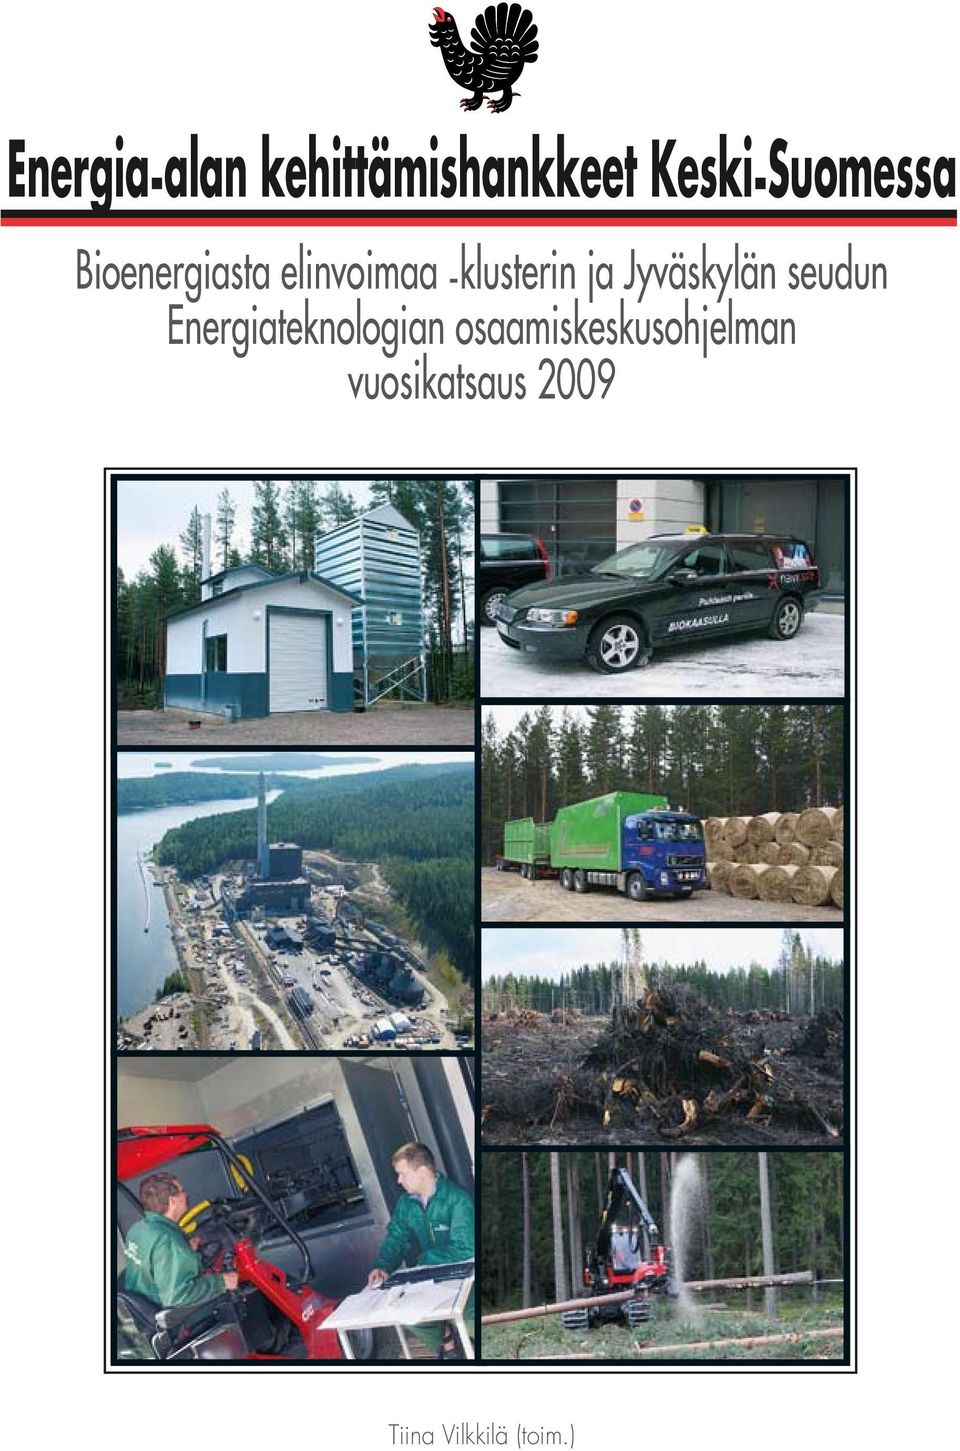 ja Jyväskylän seudun Energiateknologian